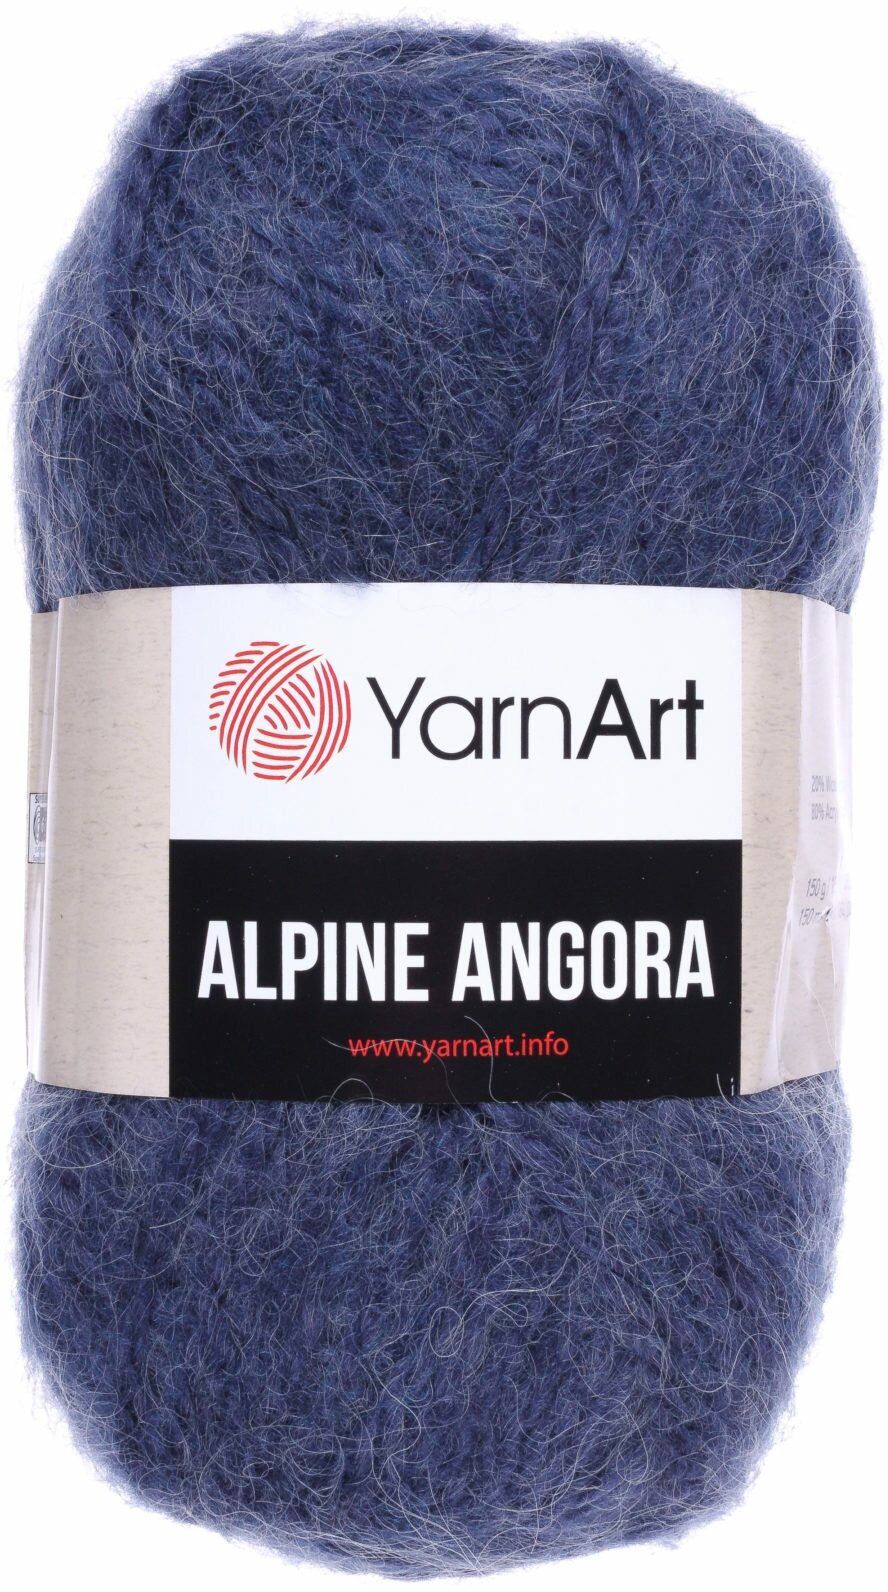 Пряжа Yarnart Alpine angora джинс (338), 20%шерсть/80% акрил, 150м, 150г, 1шт